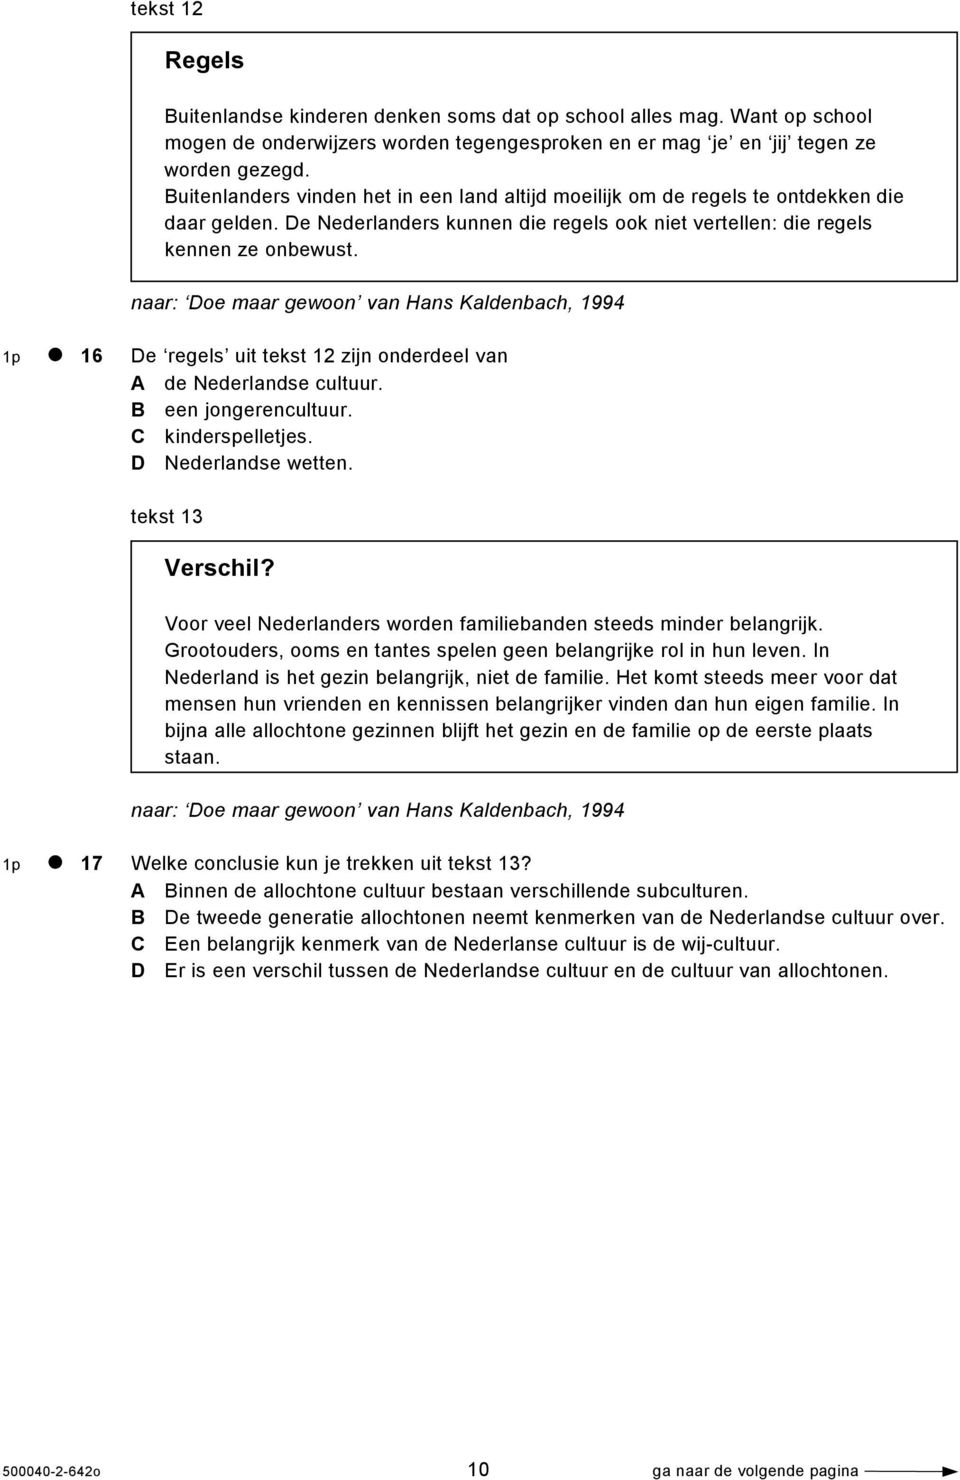 naar: Doe maar gewoon van Hans Kaldenbach, 1994 1p 16 De regels uit tekst 12 zijn onderdeel van A de Nederlandse cultuur. B een jongerencultuur. C kinderspelletjes. D Nederlandse wetten.